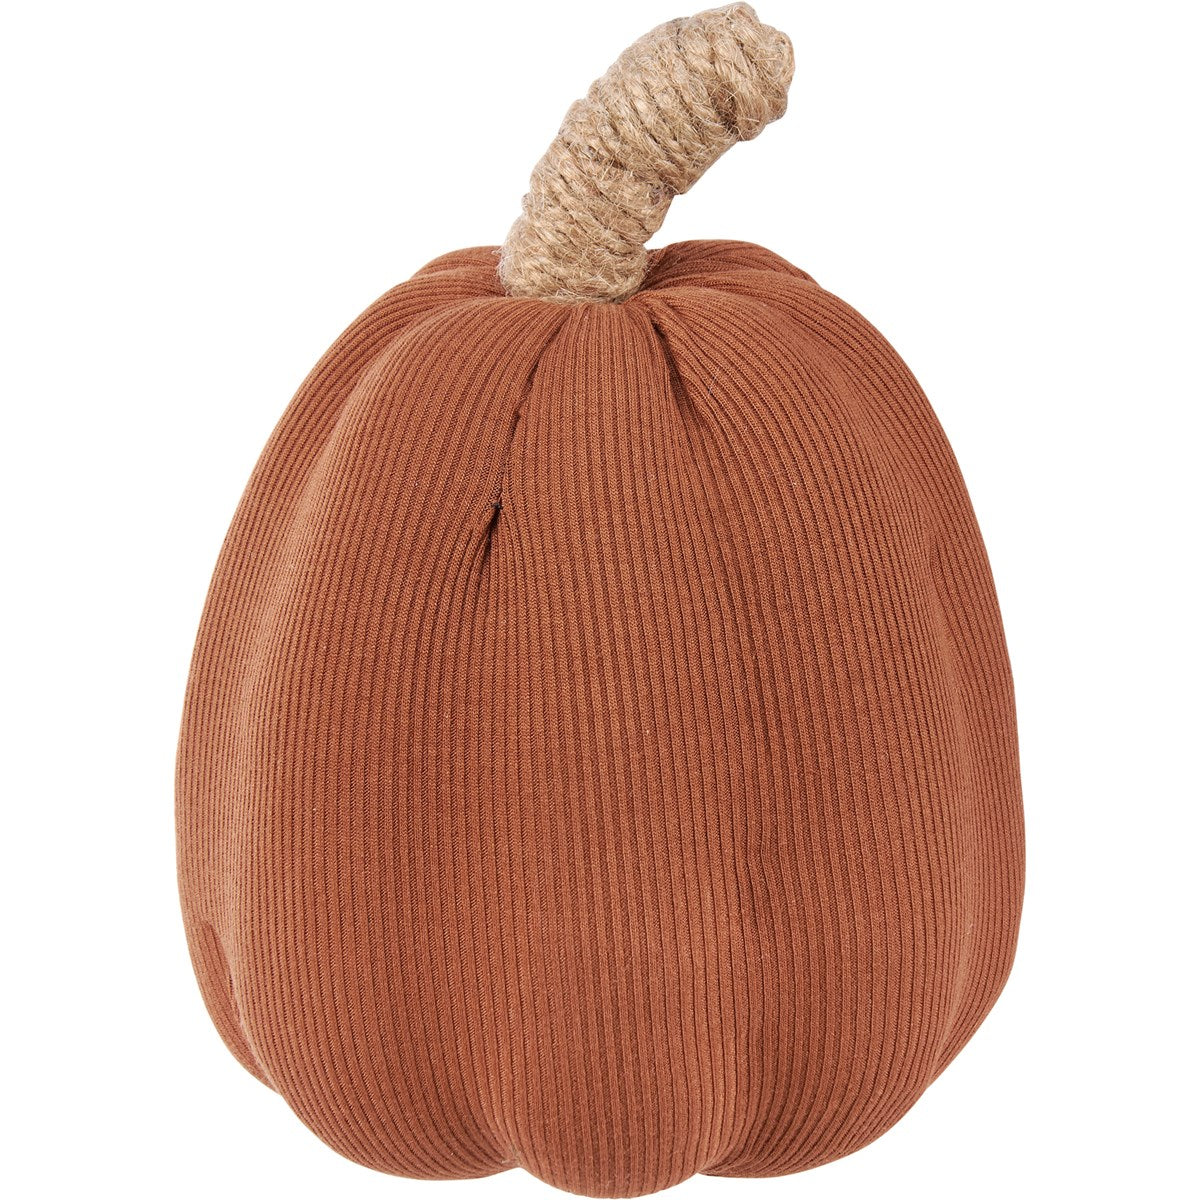 Brown Knitted Pumpkin